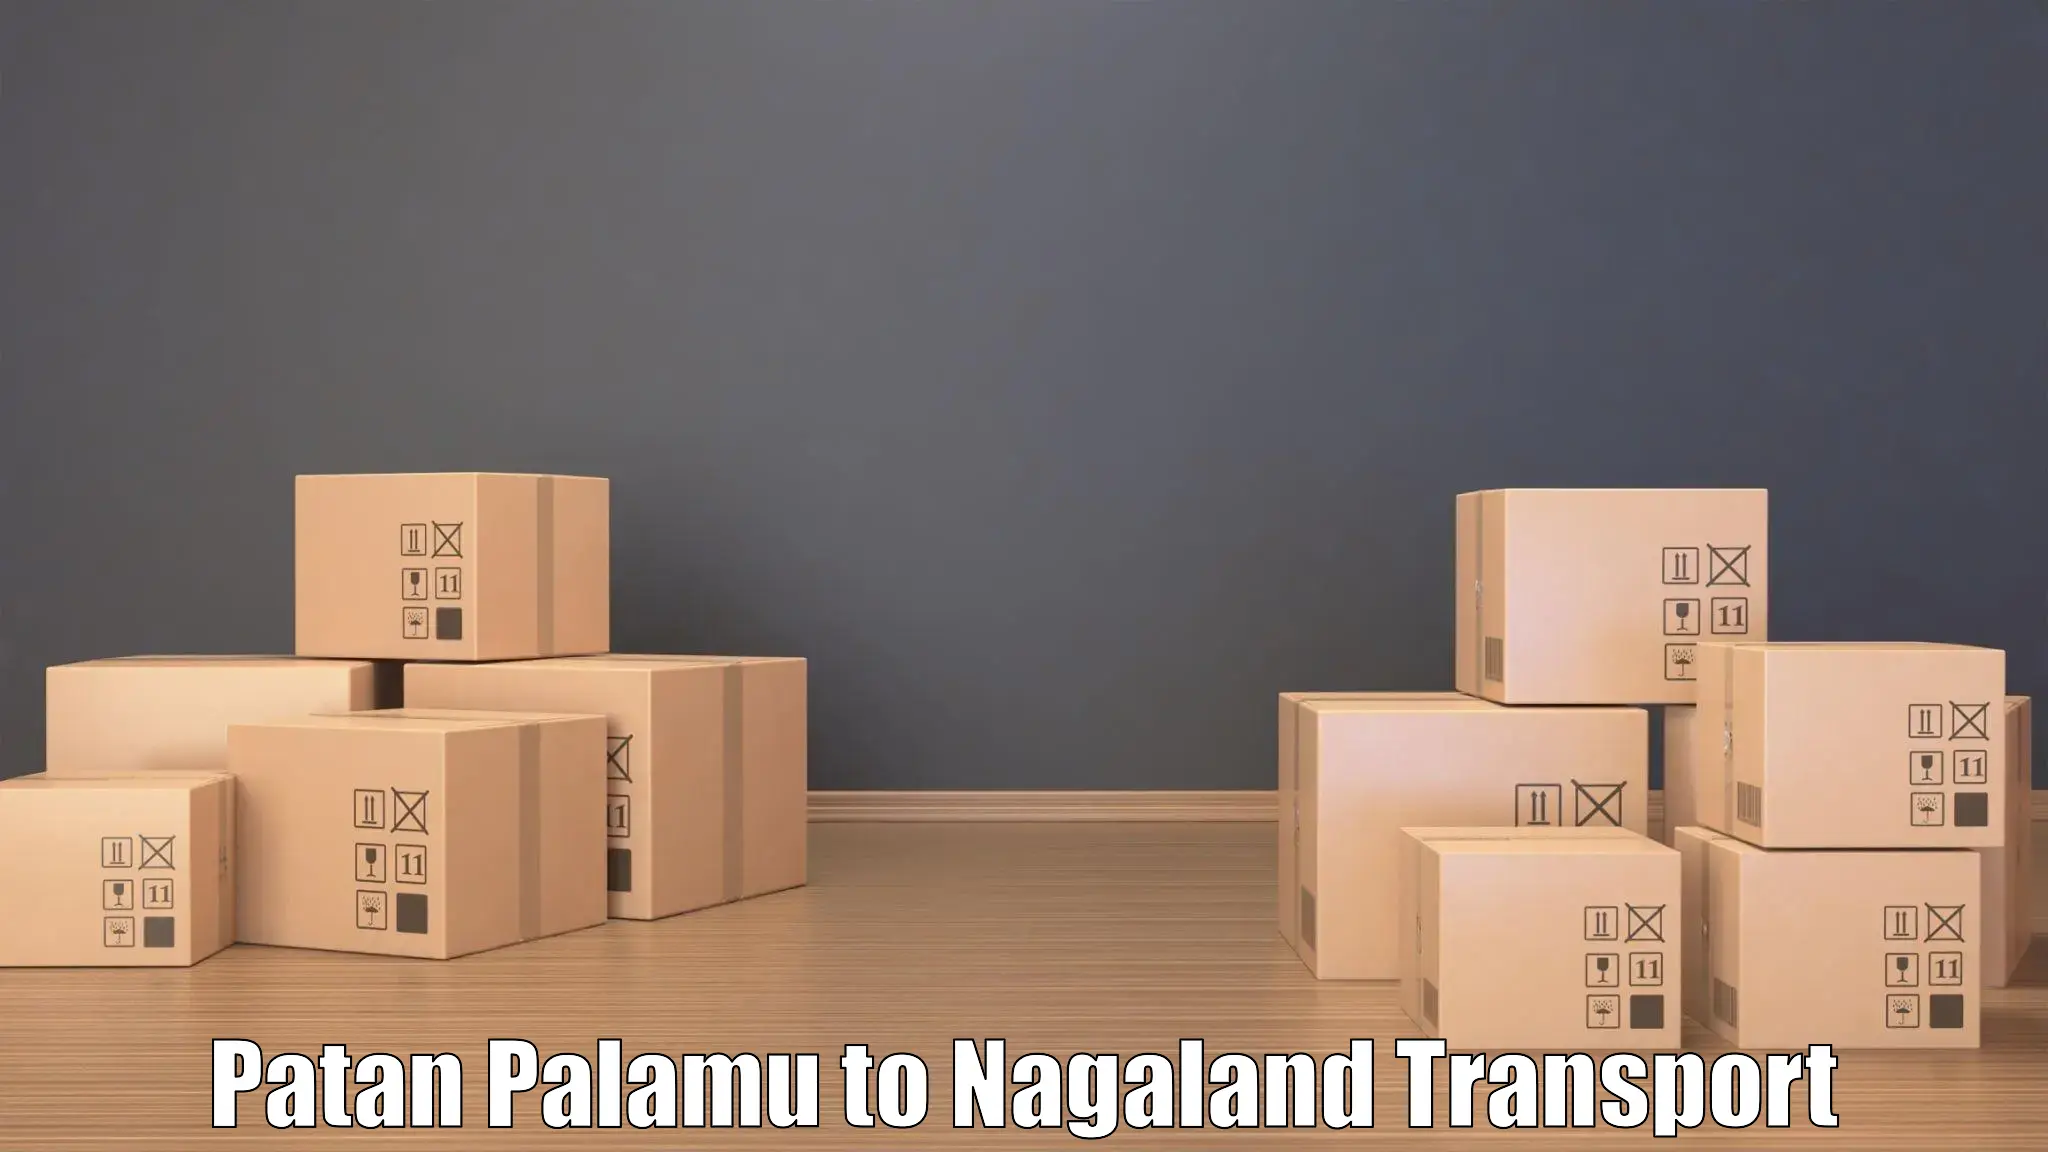 Transport services in Patan Palamu to Longleng